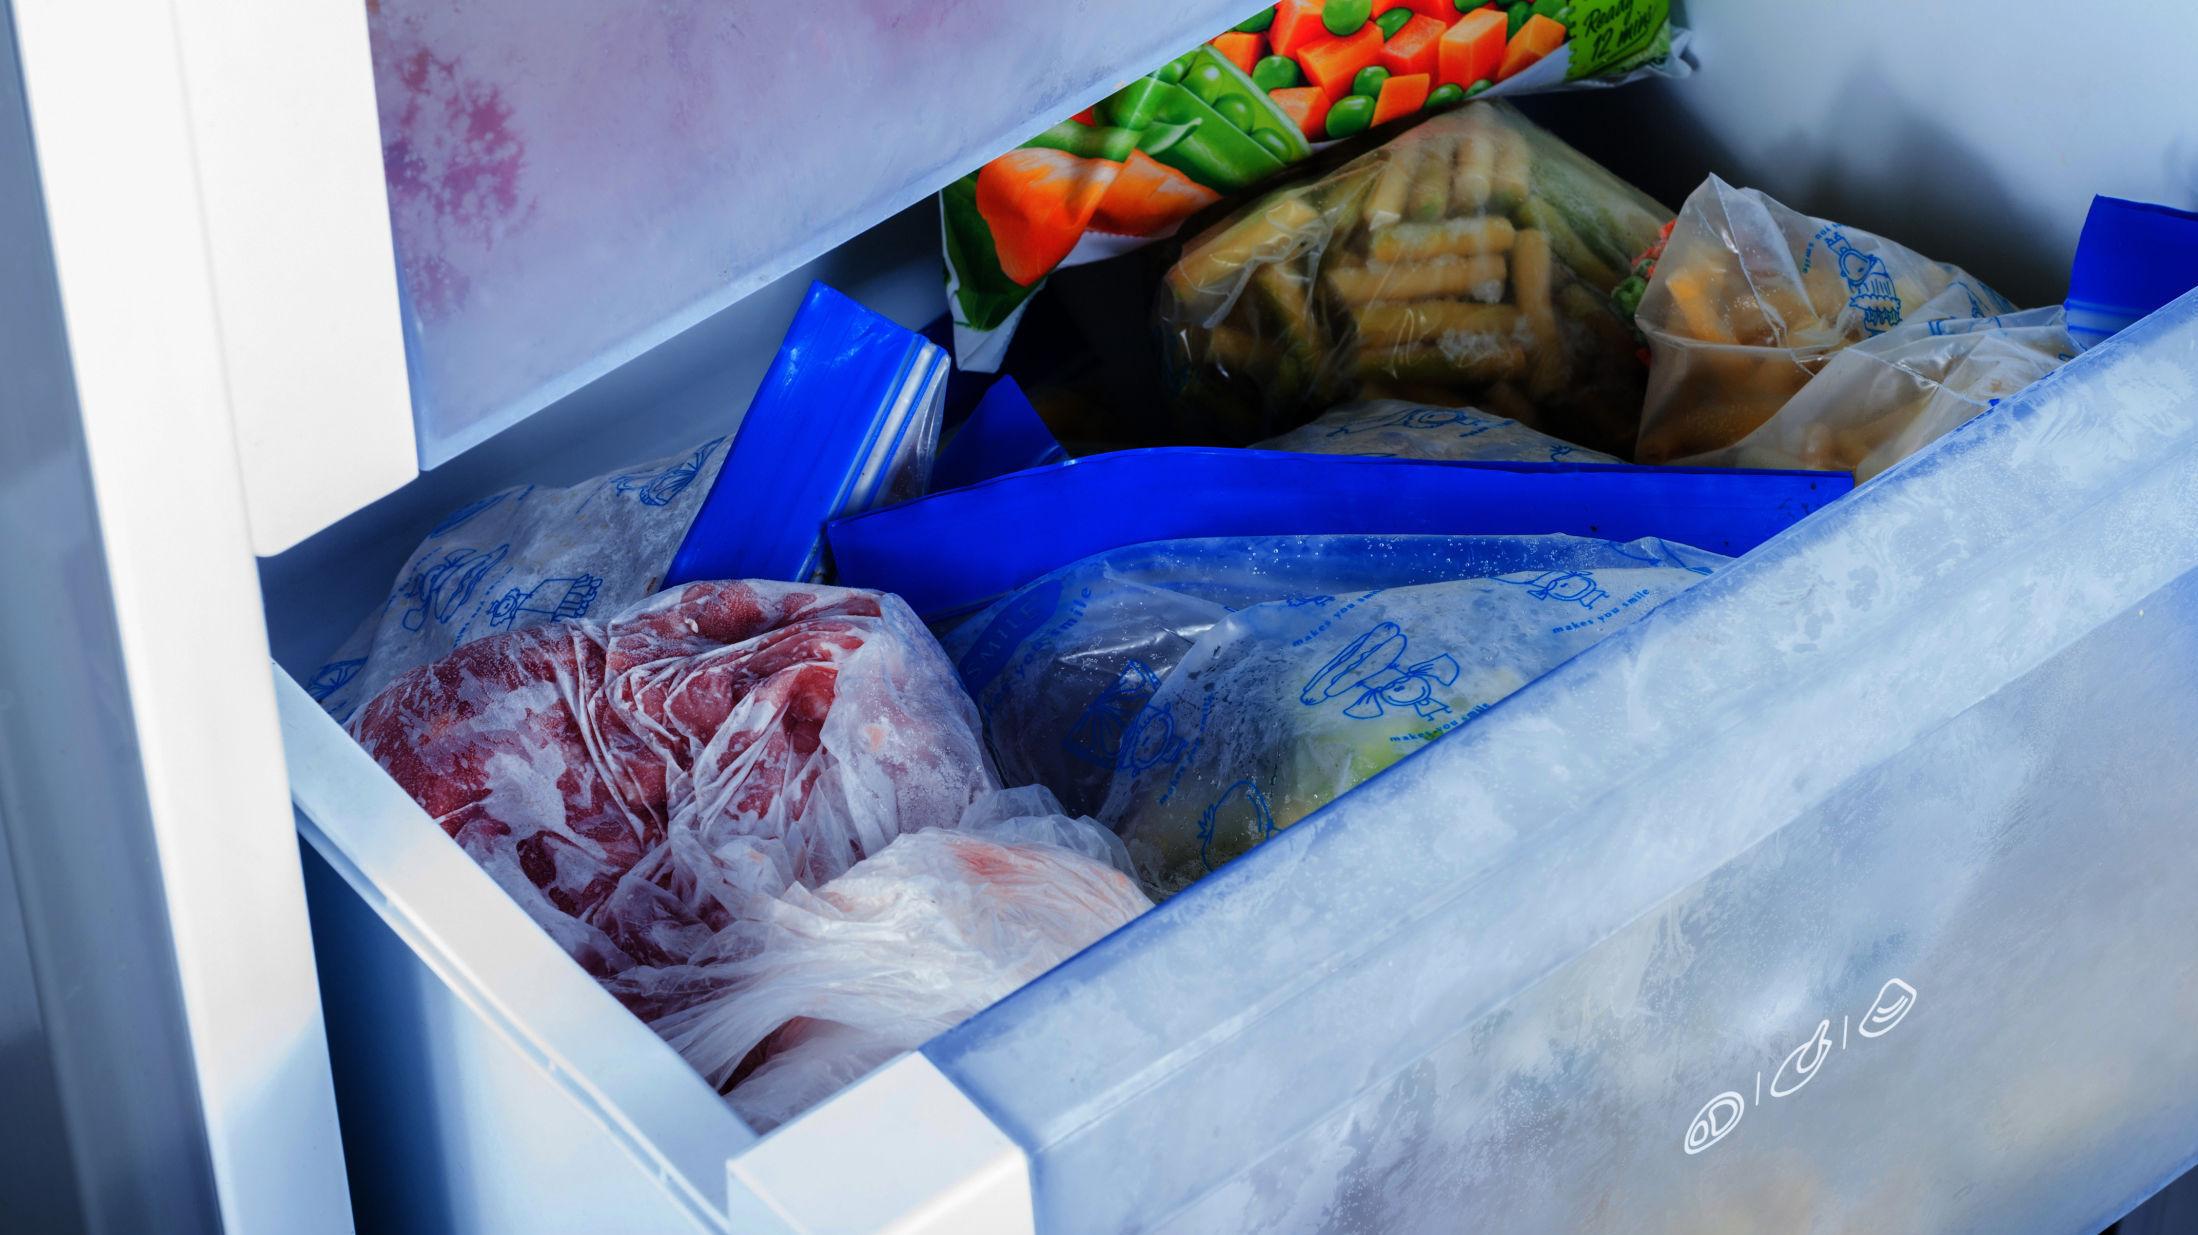 FORTSATT GOD? Bruk anledningen til å tømme fryseren for mat som har ligget der en stund. Foto: Shutterstock/NTB Scanpix